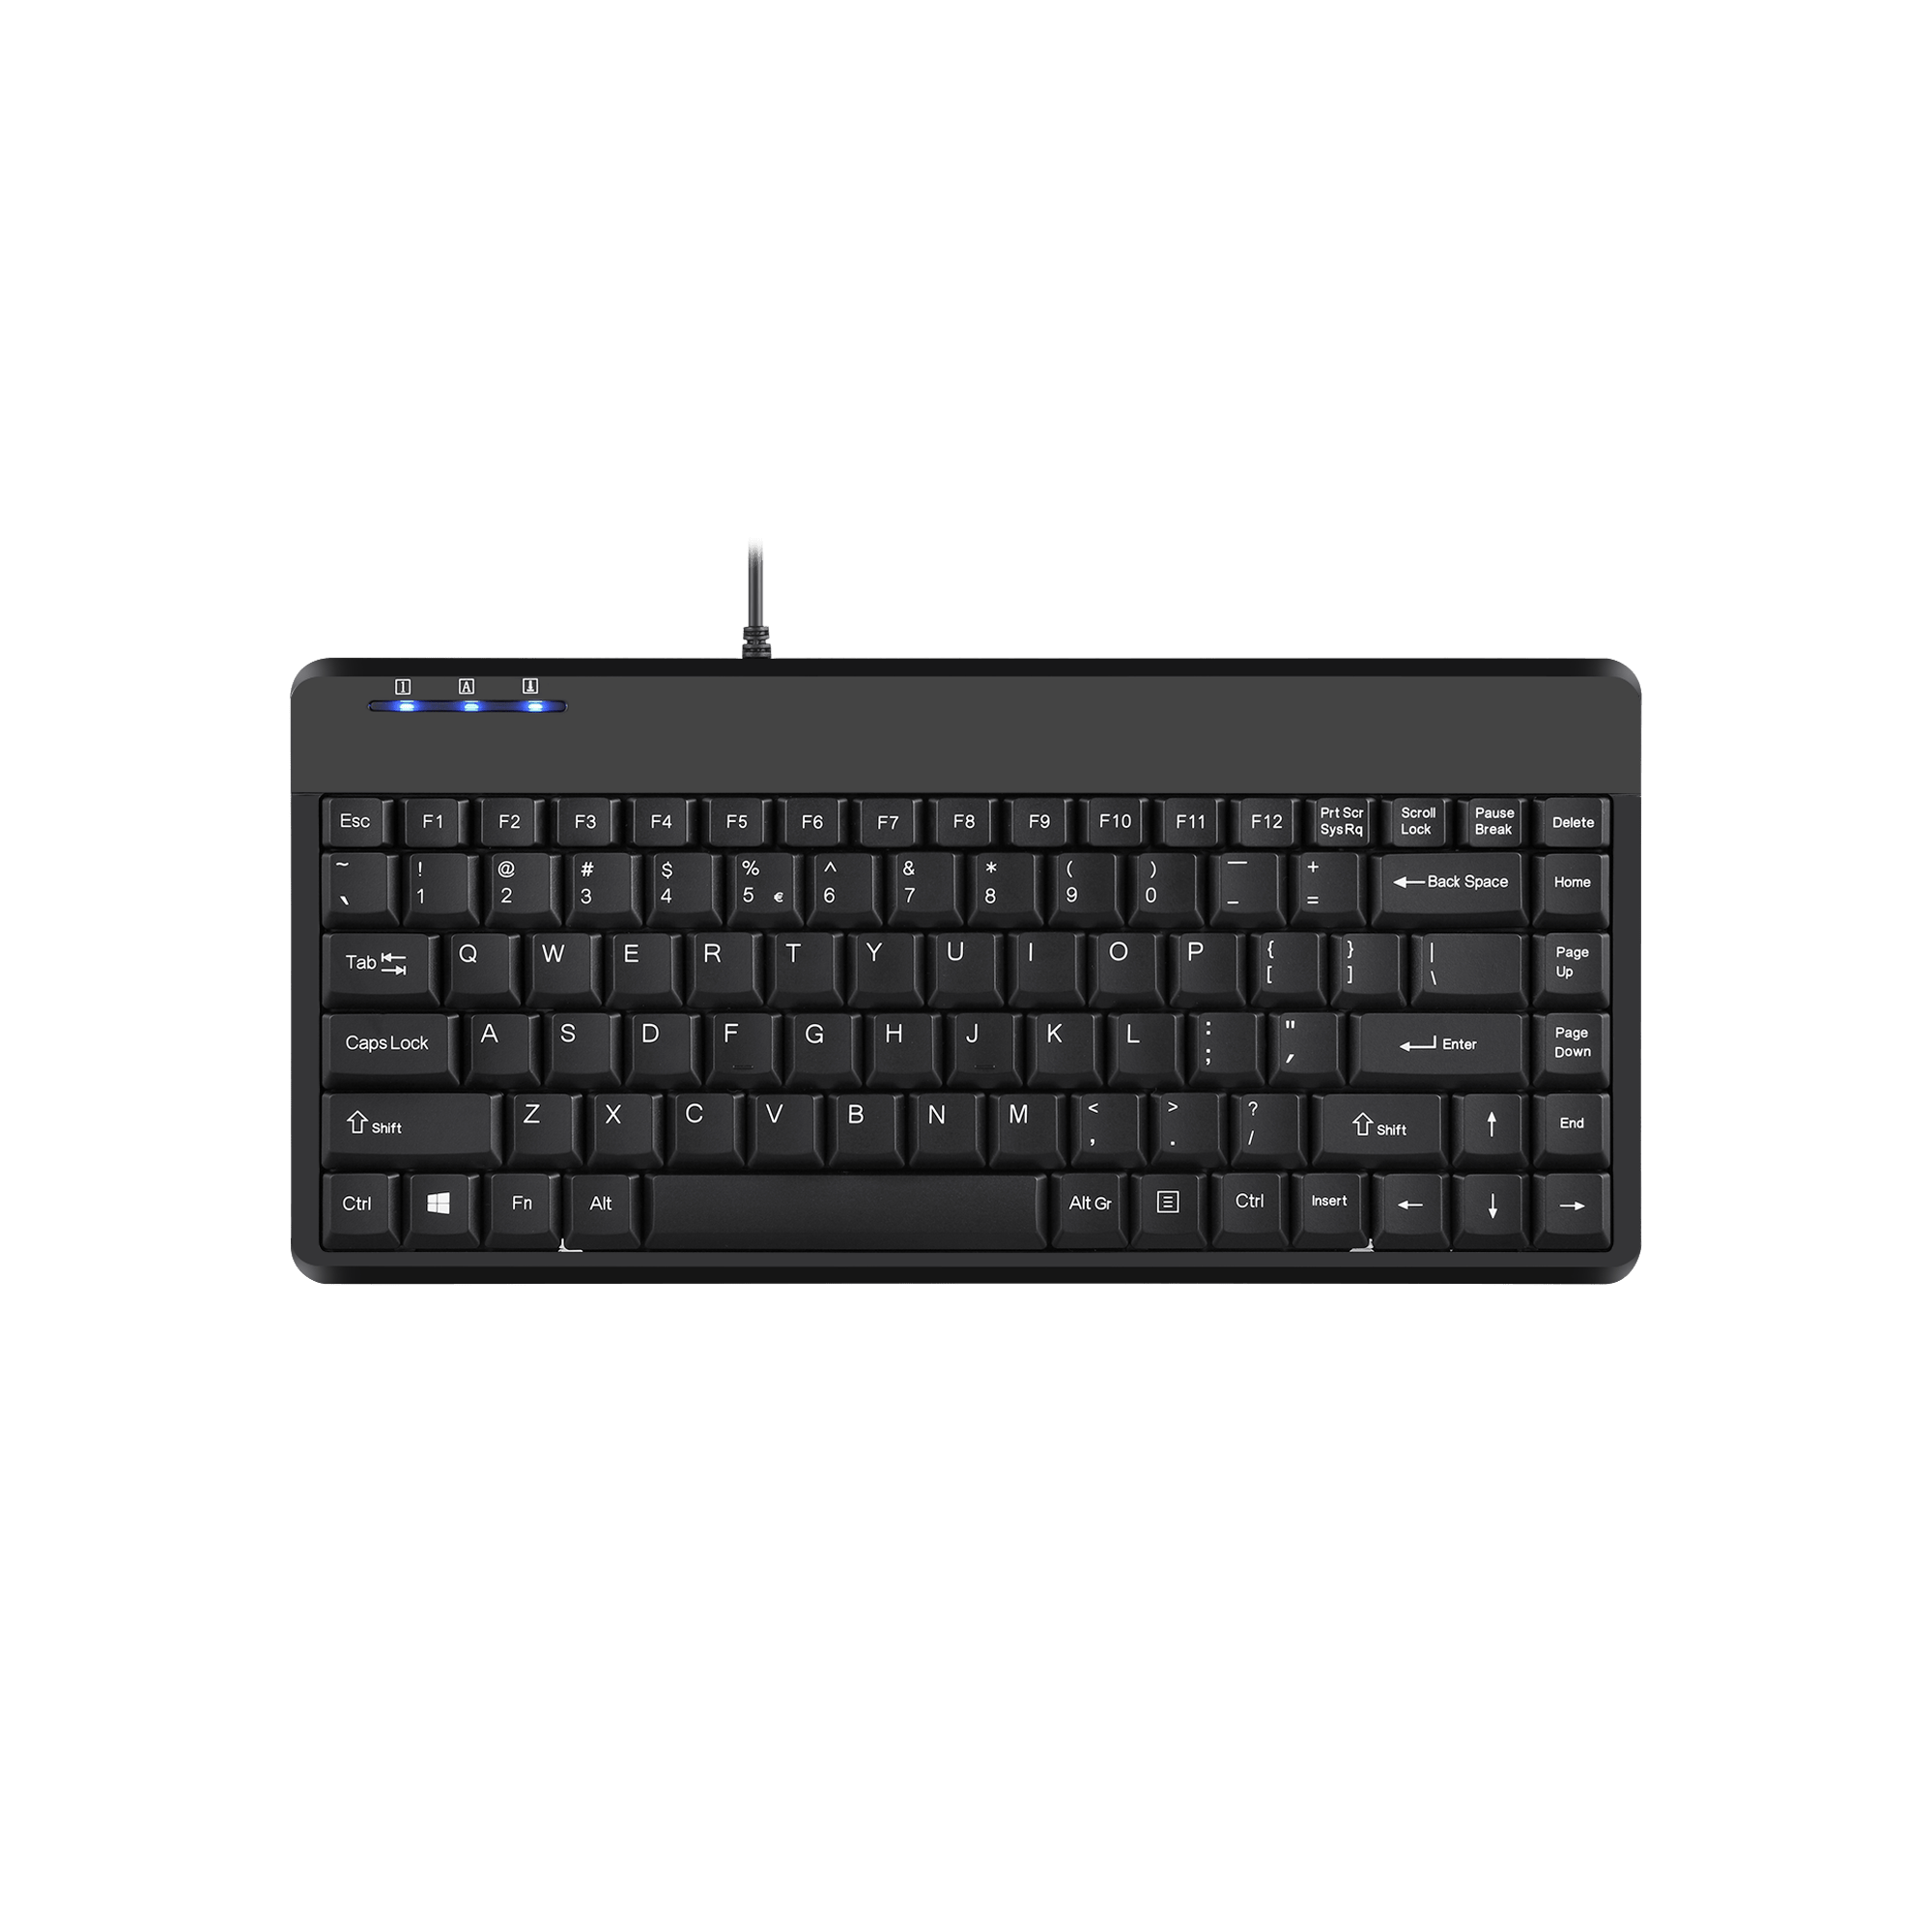 PERIBOARD-409 P - Mini 75% PS/2 Keyboard - Perixx Europe